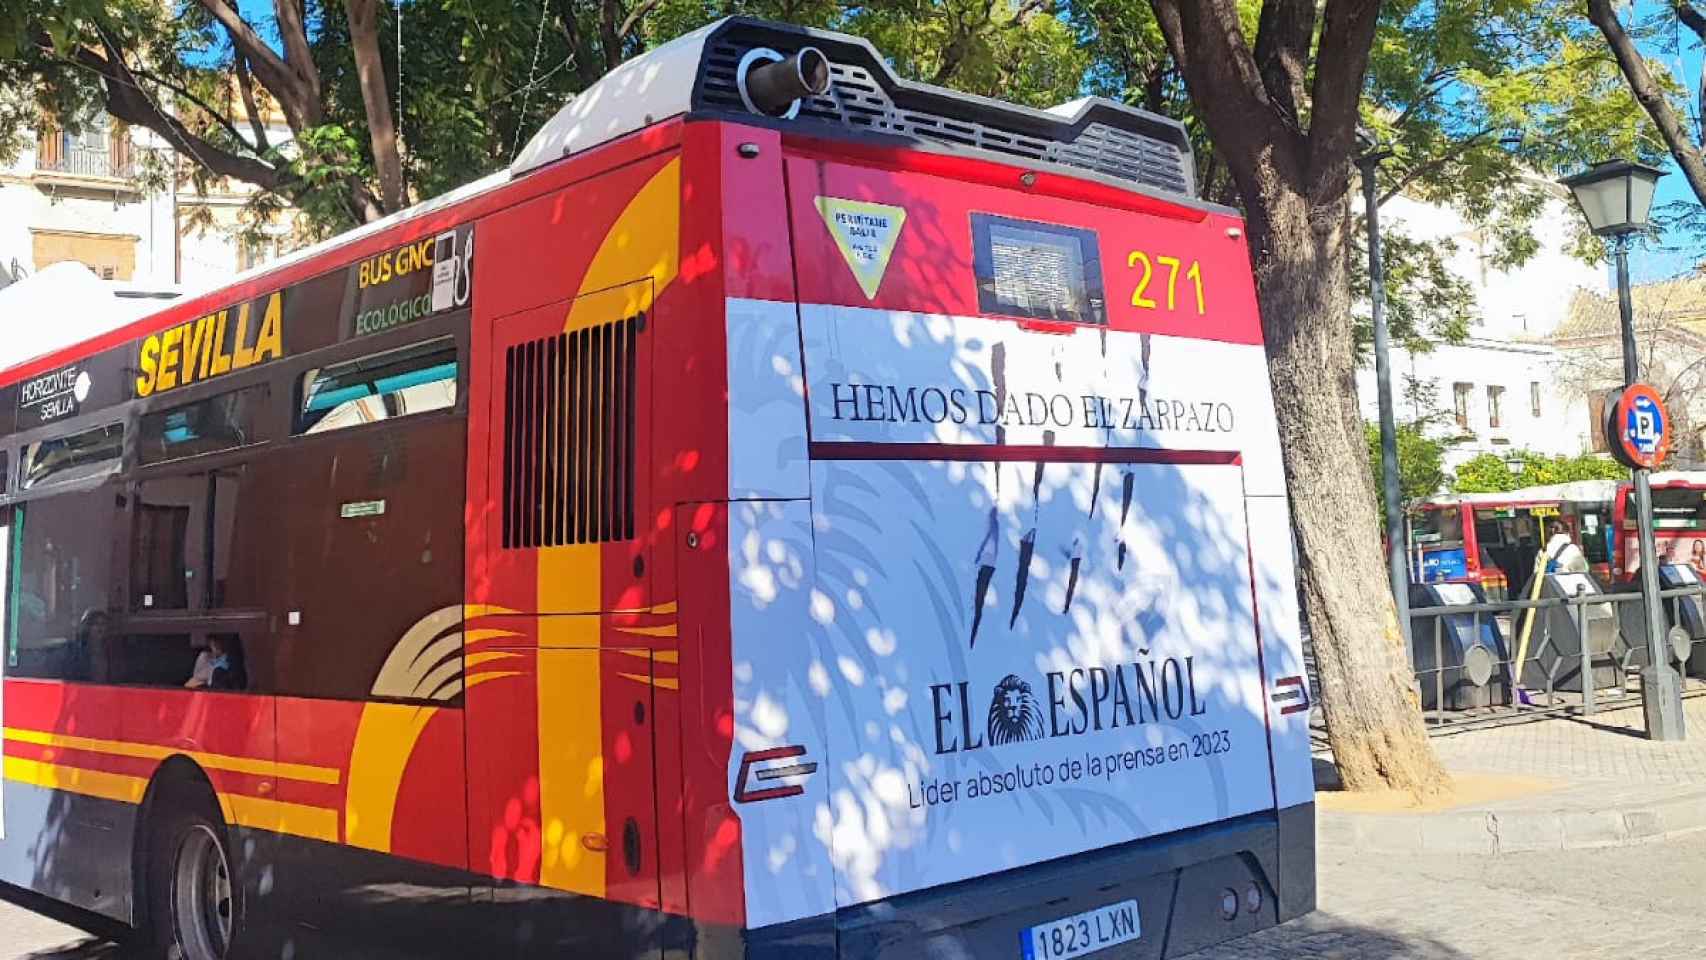 Un autobús de Tussam porta la campaña de El Español por las calles de Sevilla.